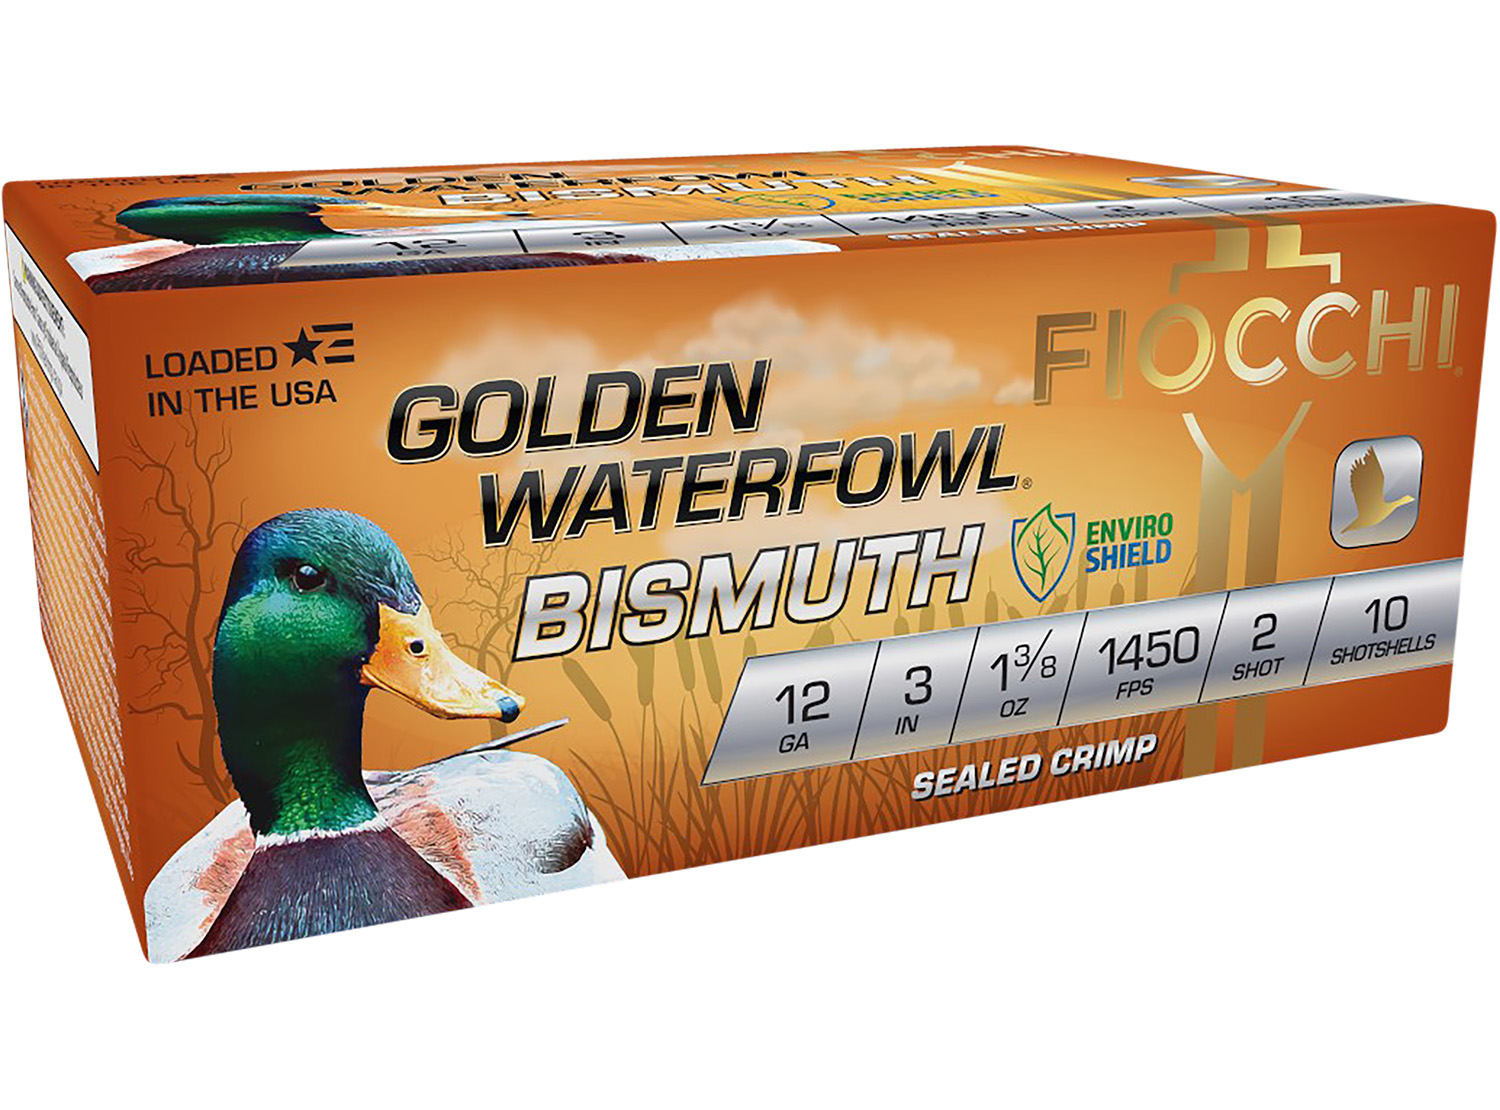 Fiocchi 123GB2 Golden Waterfowl Bismuth 12 Gauge 3